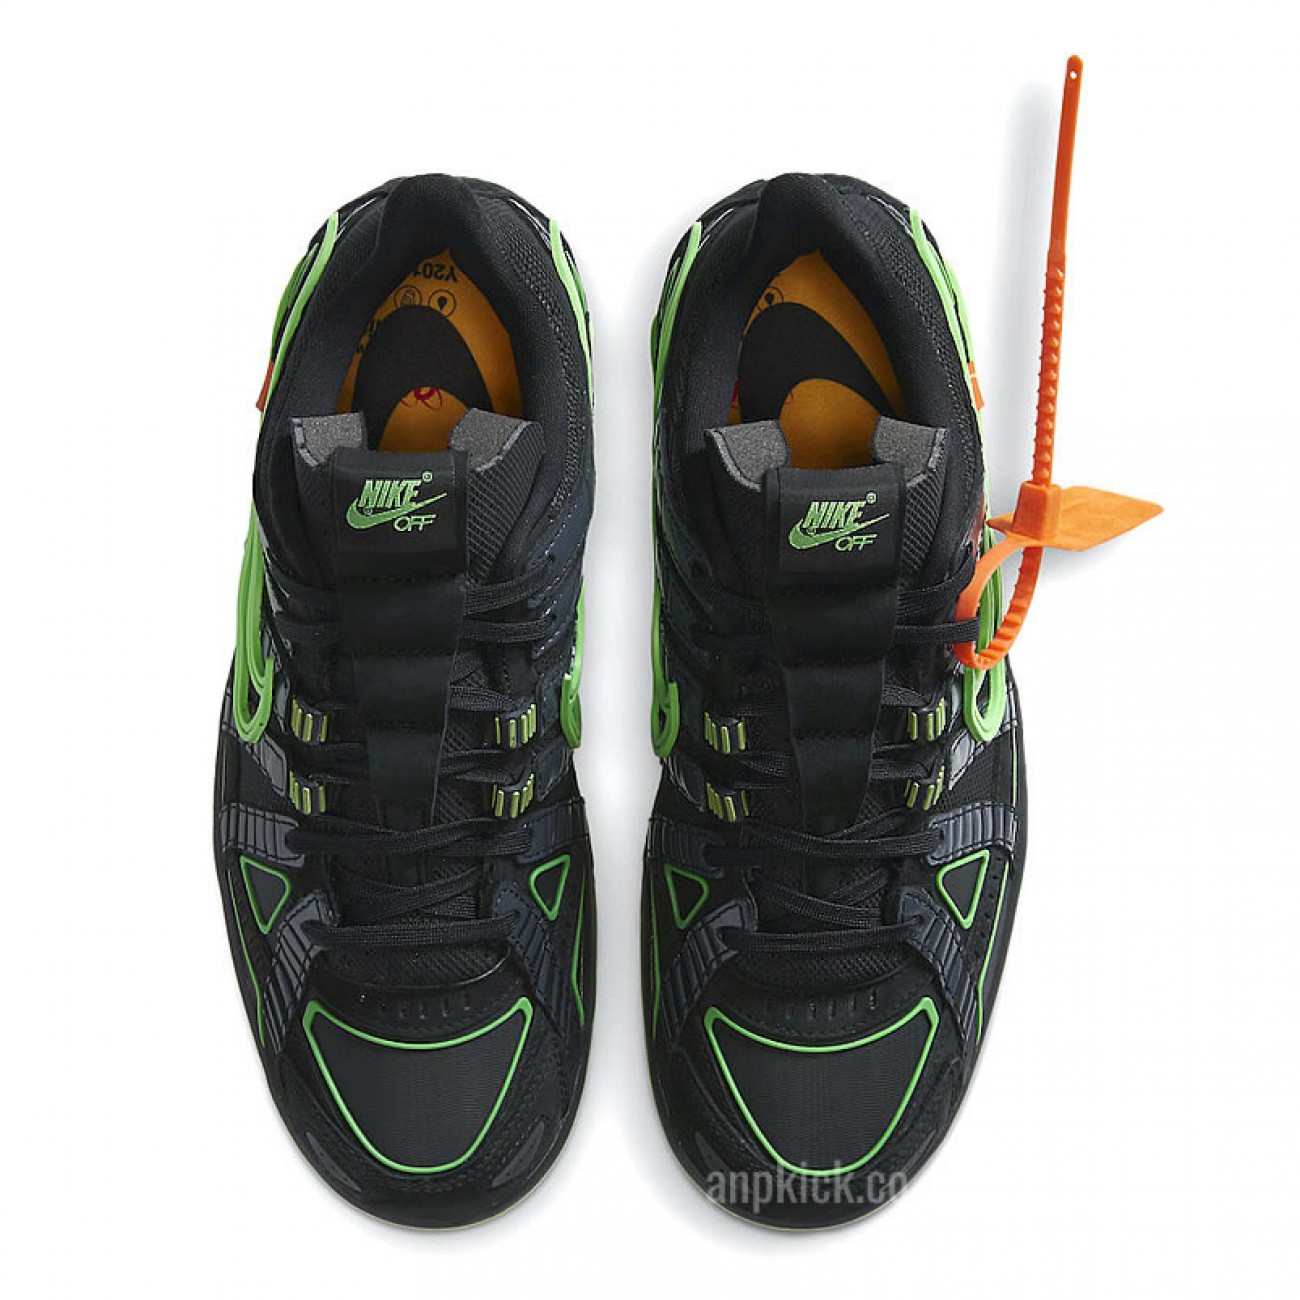 Off-White x Nike Air Rubber Dunk "Green Strike" Release Date CU6015-001